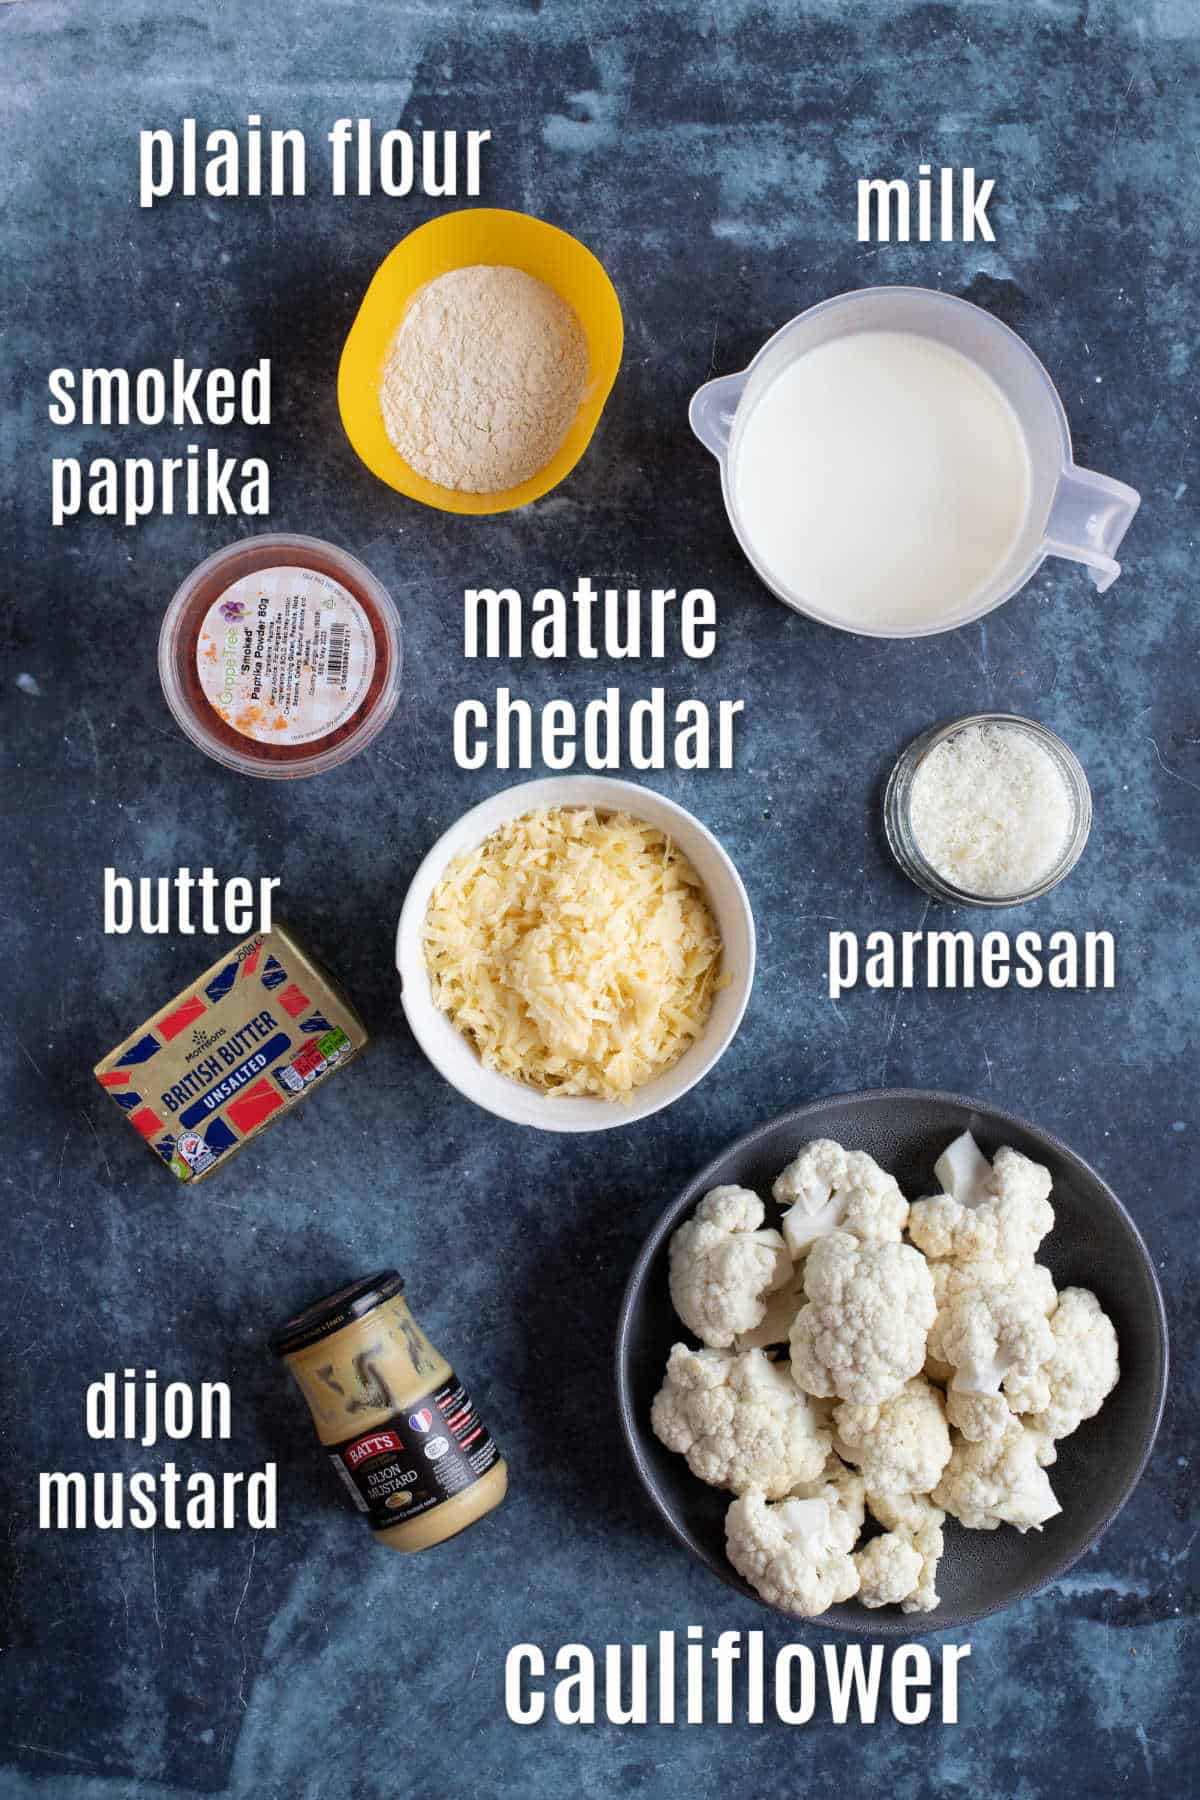 Ingredients for cauliflower cheese.